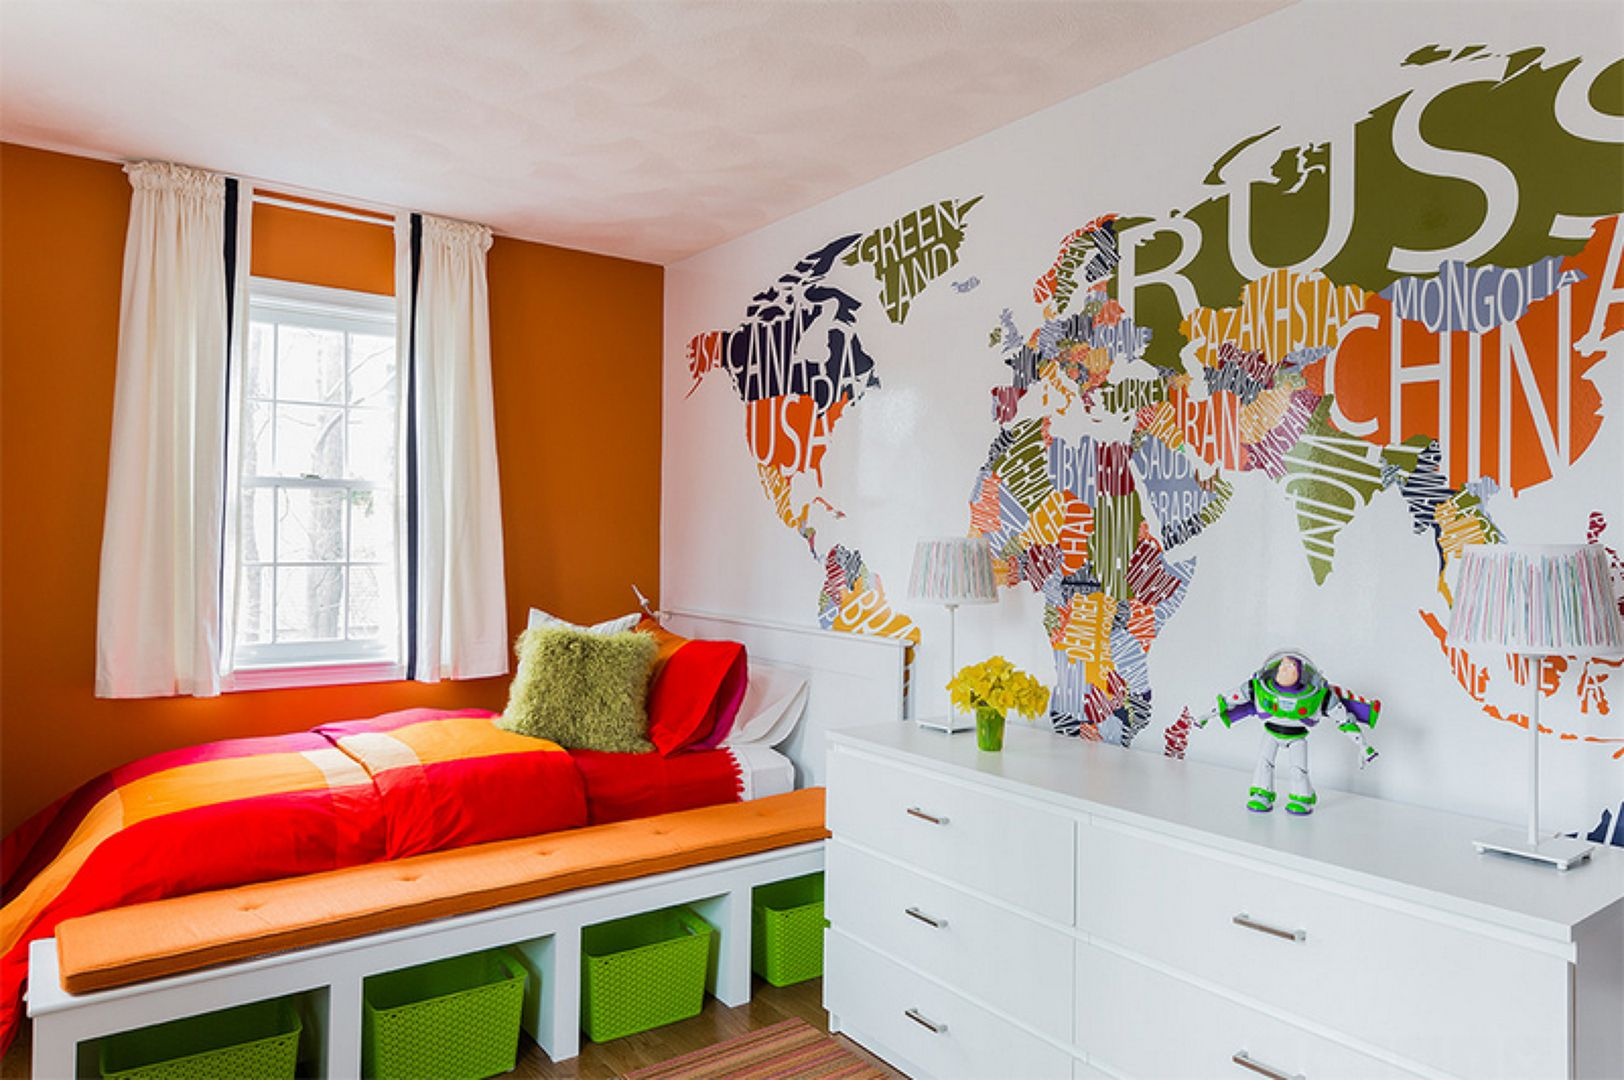 Идеи для интерьера для детской комнаты: Блог фабрики детской мебели «38 попугаев»